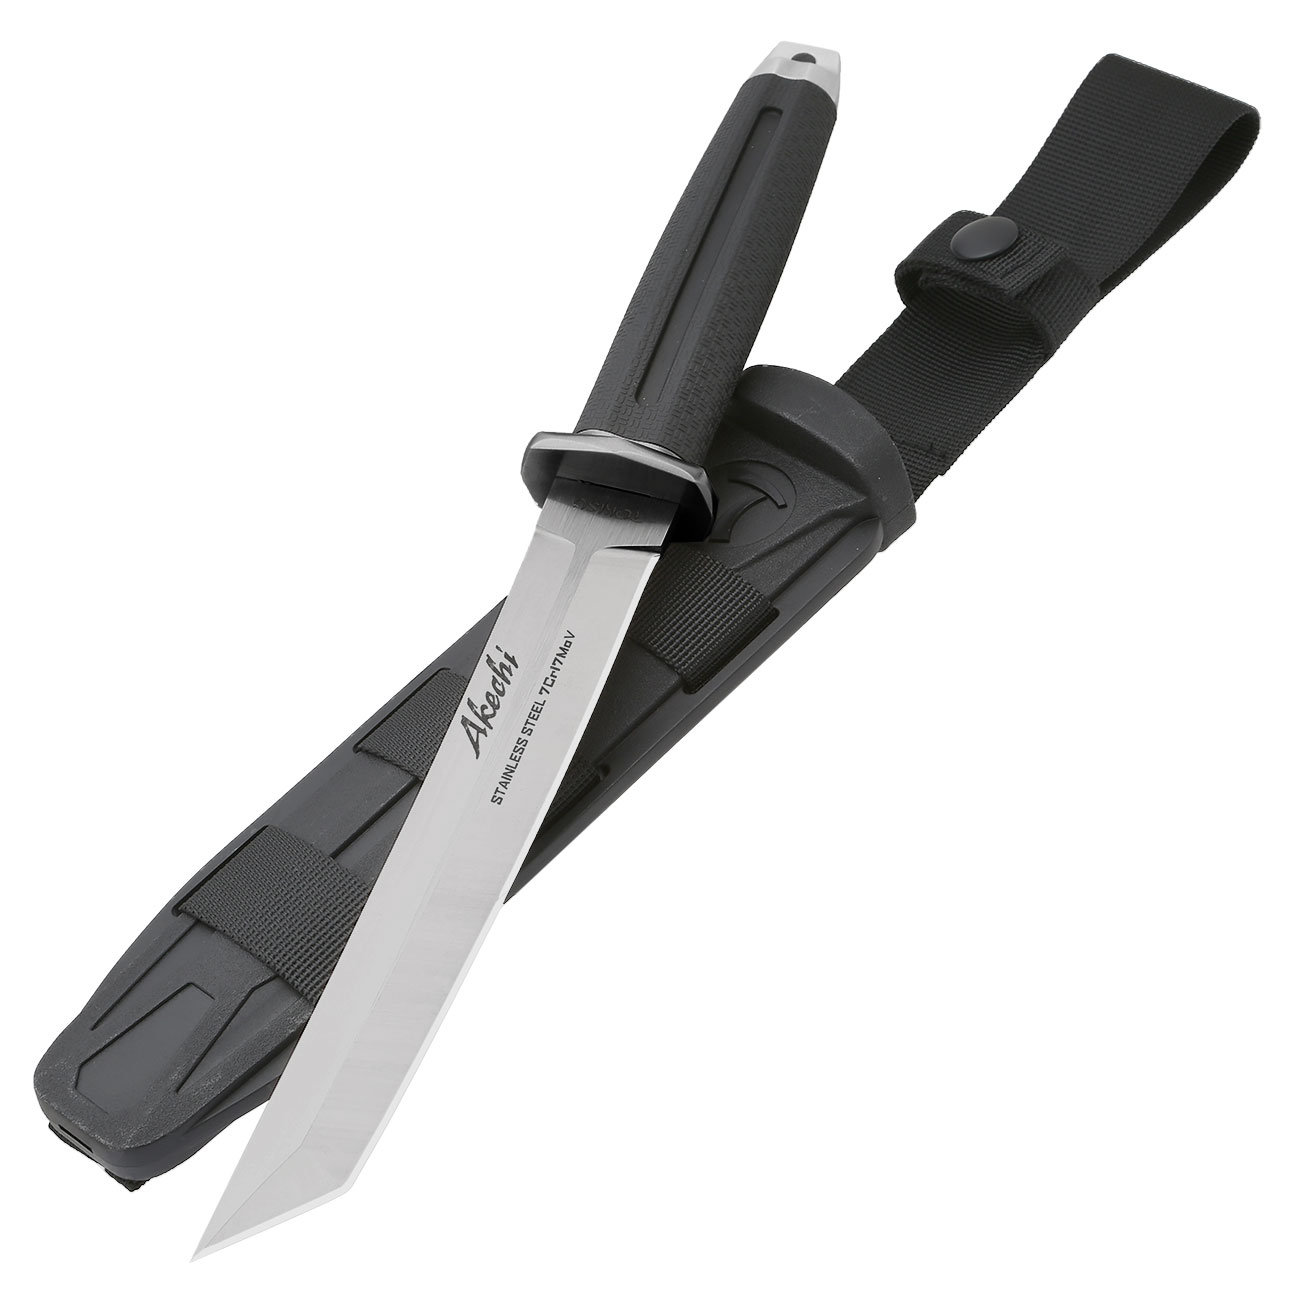 Tokisu Taktisches Messer Akechi Tantoklinge silber/schwarz inkl. Grtelscheide und Box Bild 2